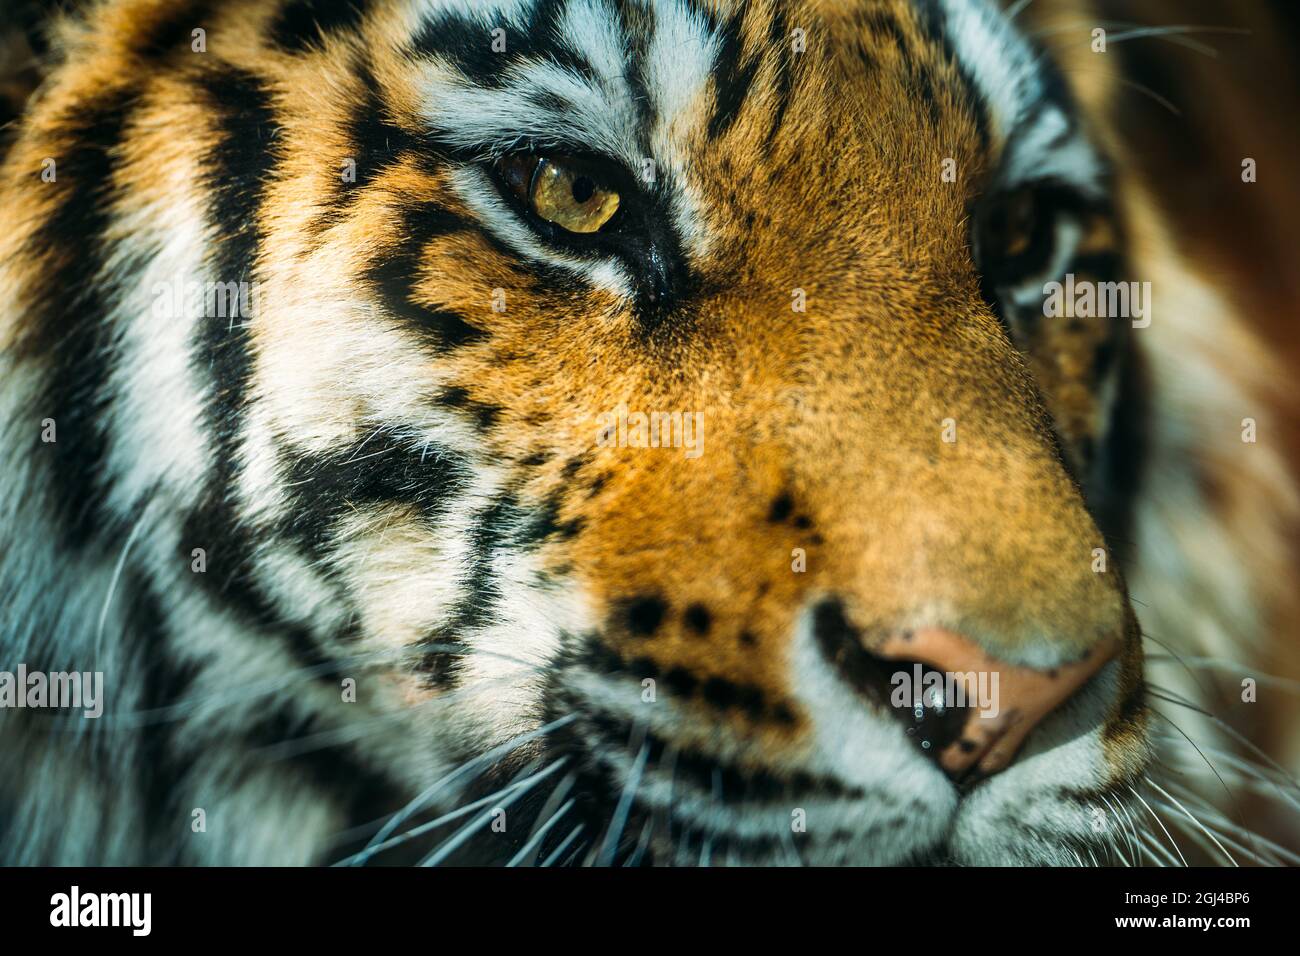 Schönes Nahaufnahme-Porträt des Tigers. Wildkatzen-Raubtier-Schnauze. Stockfoto